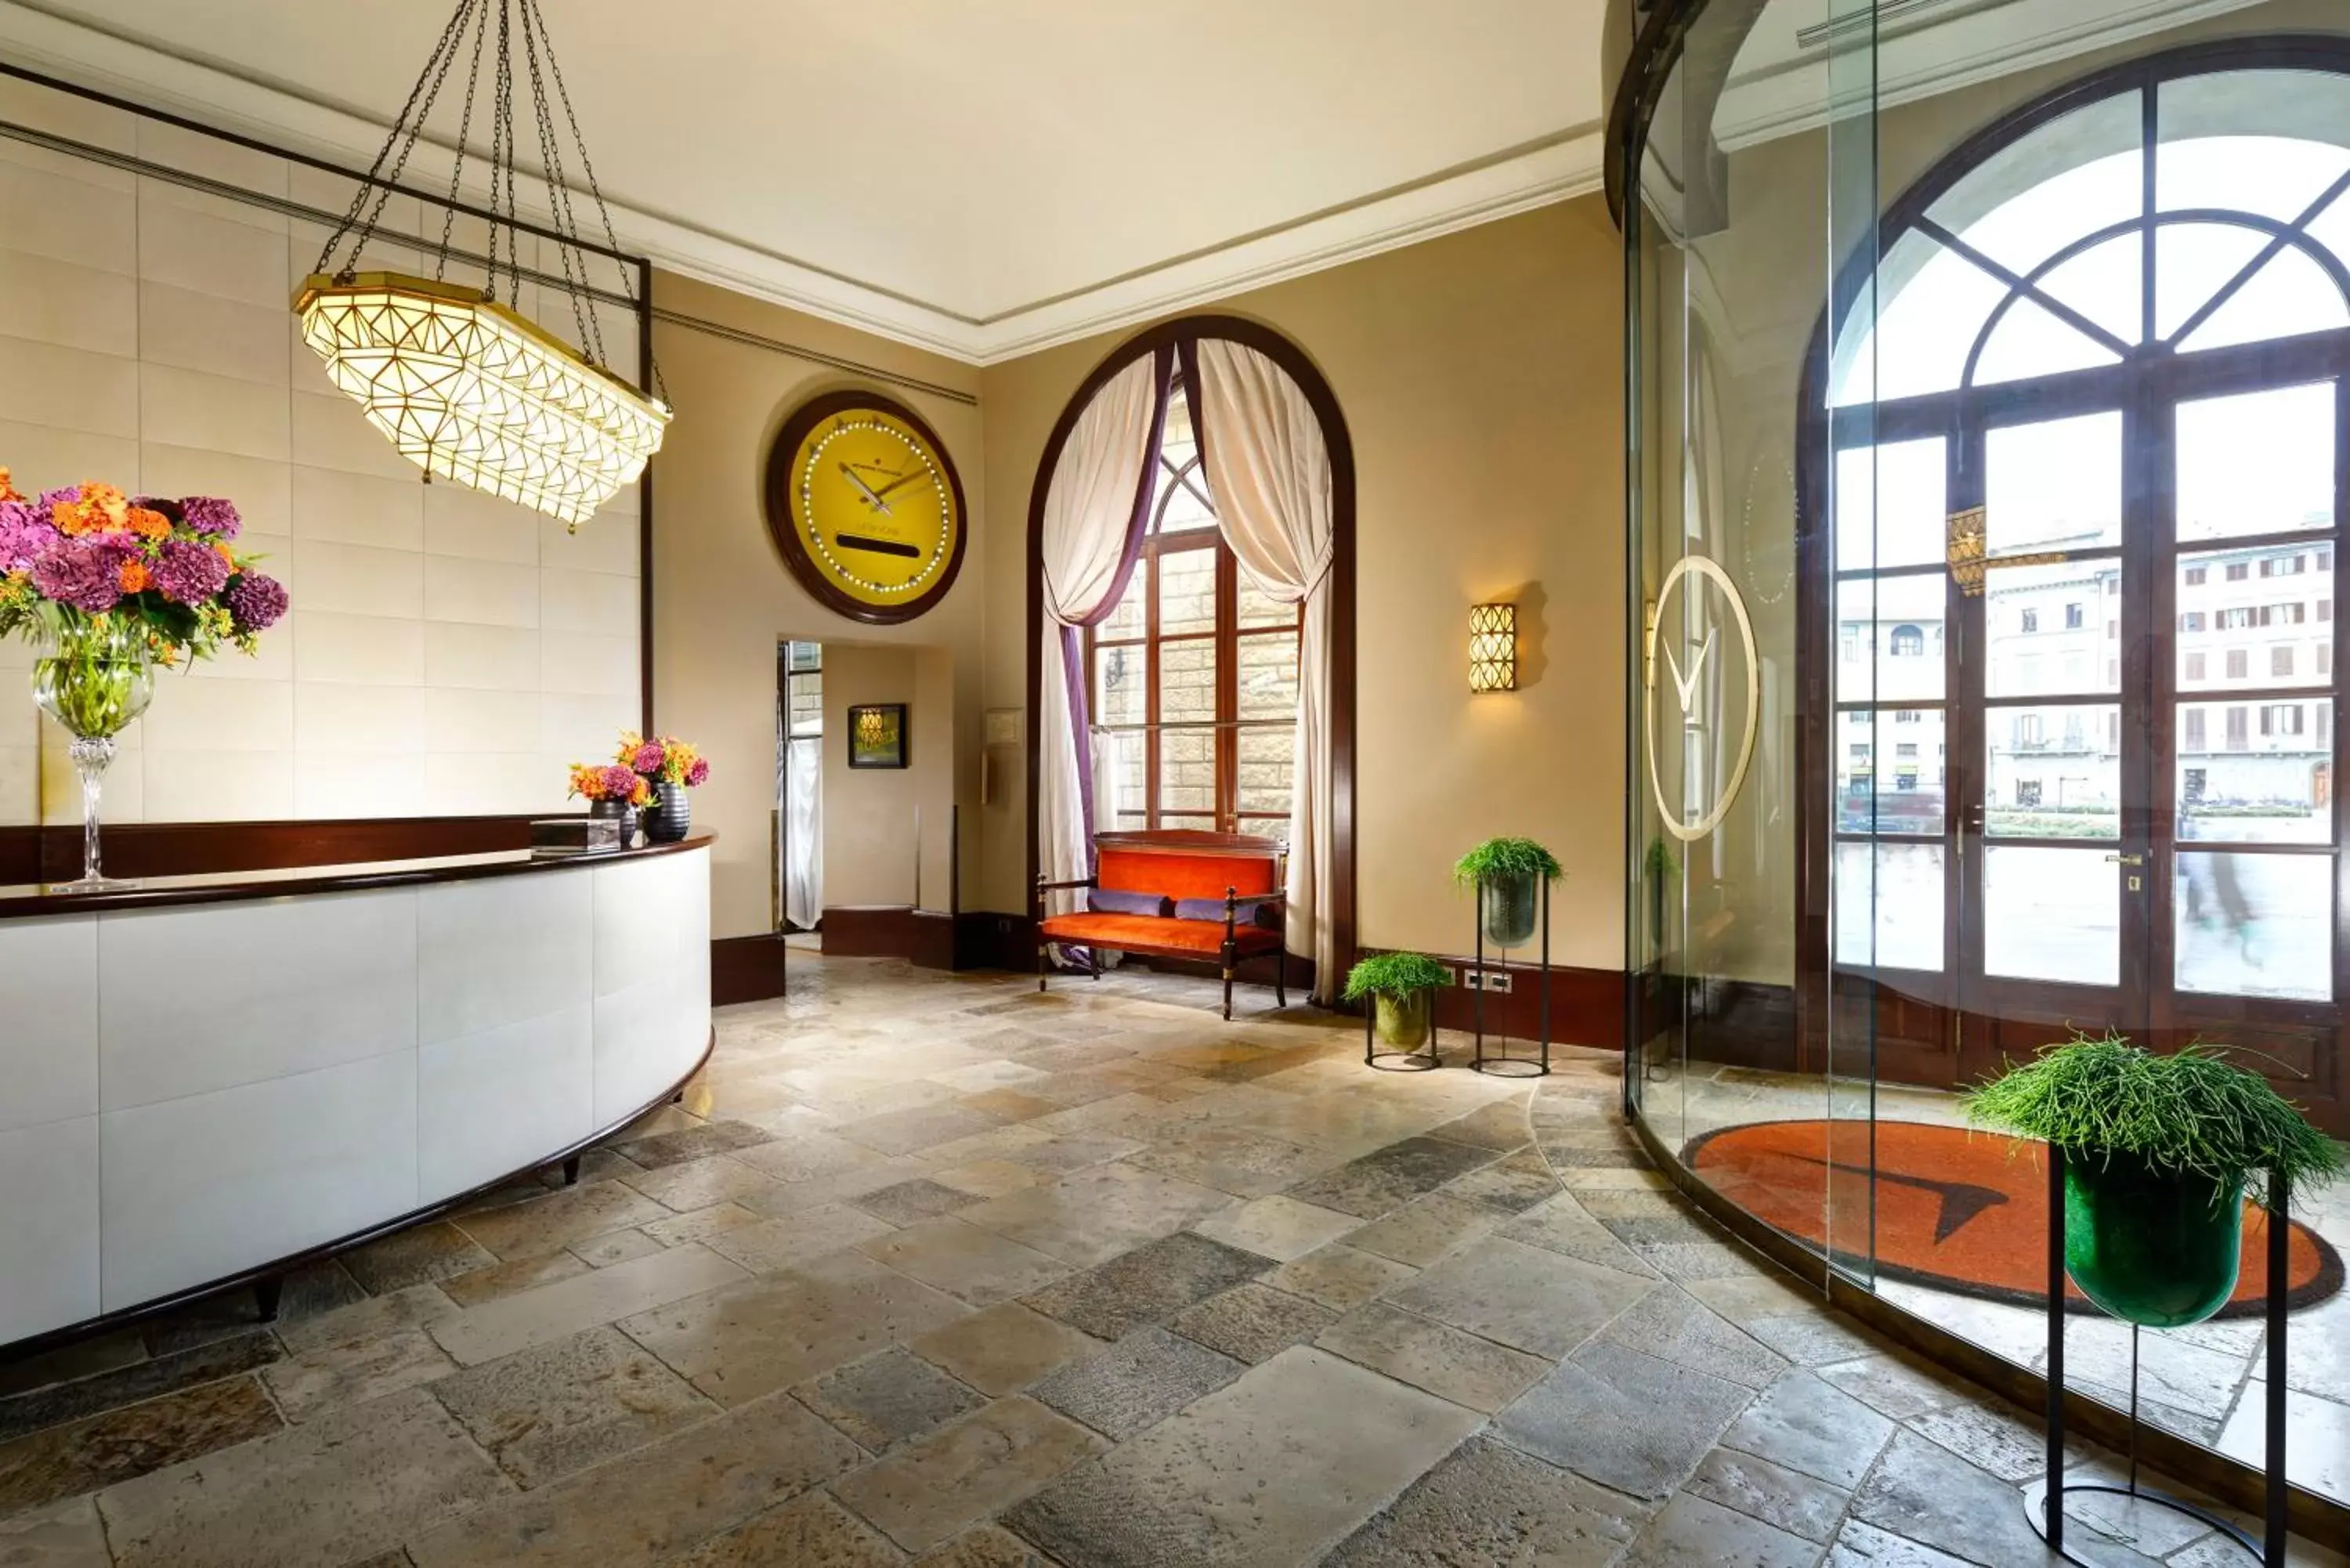 Lobby or reception, Lobby/Reception in Hotel L'Orologio - WTB Hotels